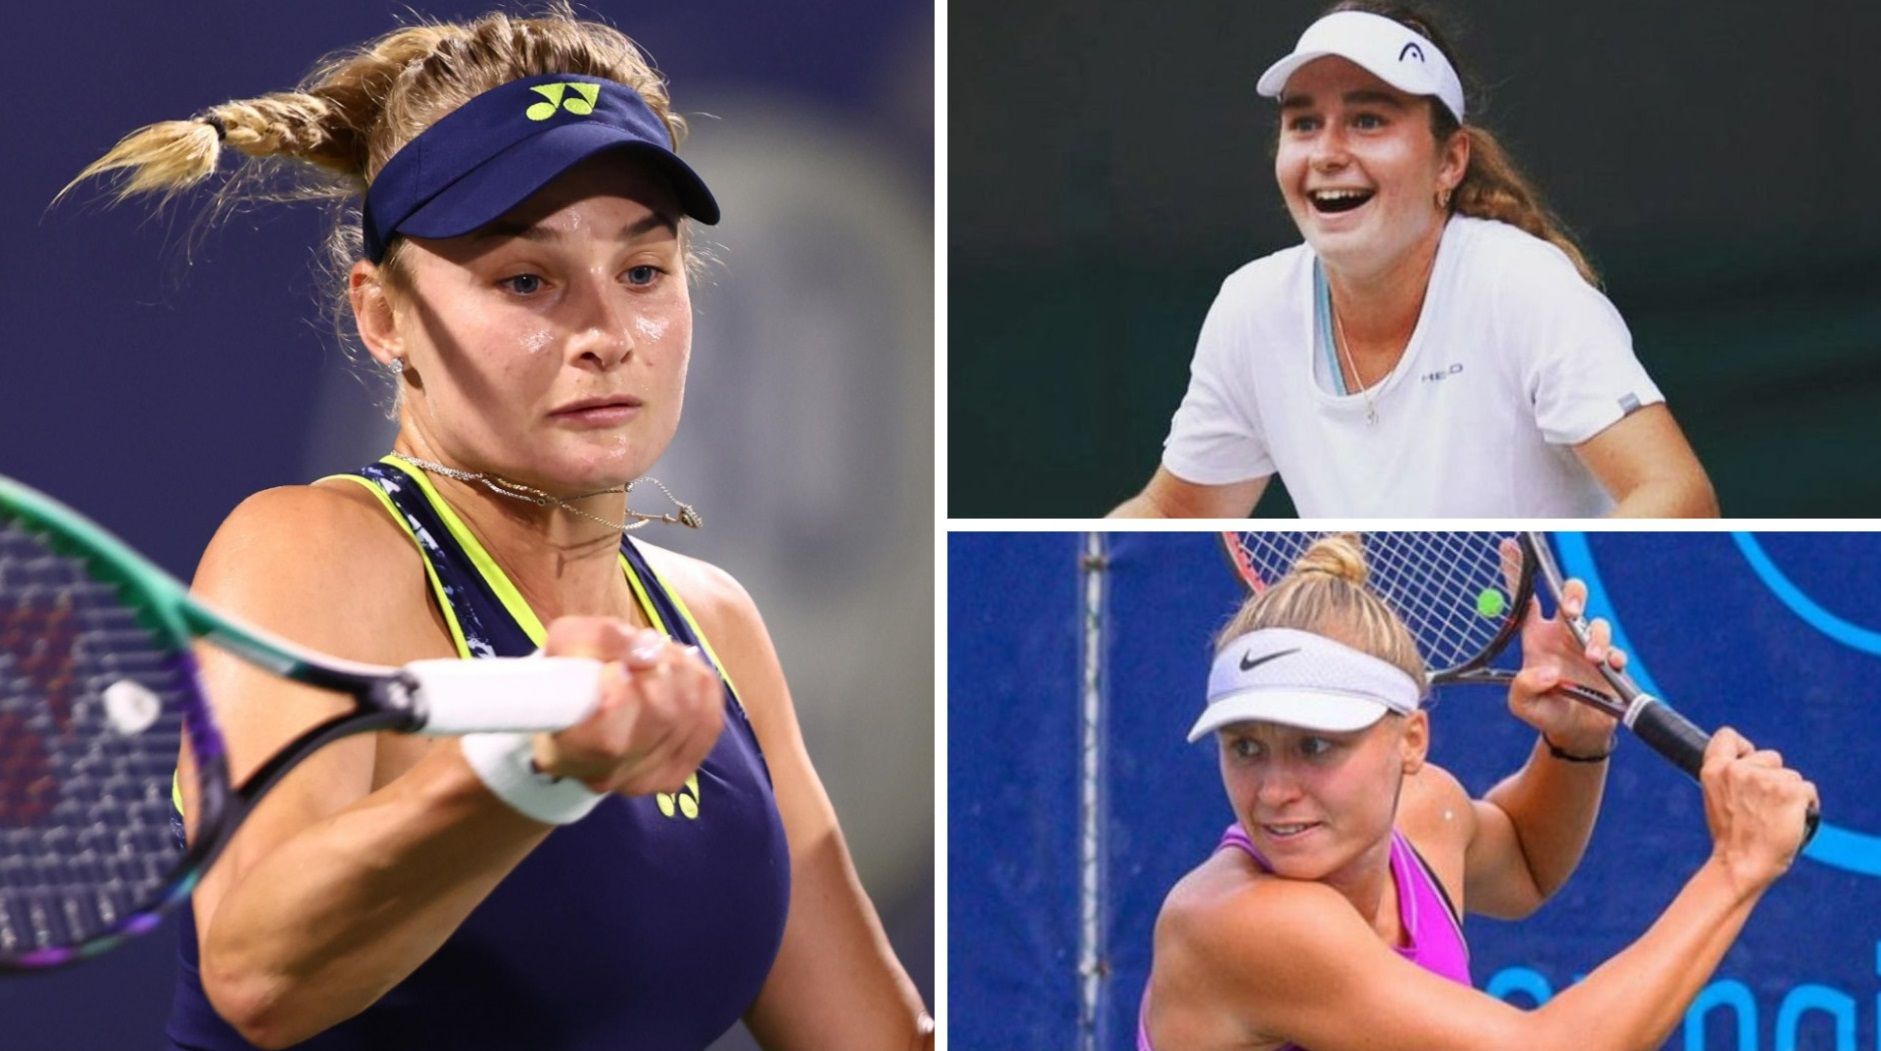 Ястремская, Снигур и Стародубцева вышли в финал квалификации Australian Open